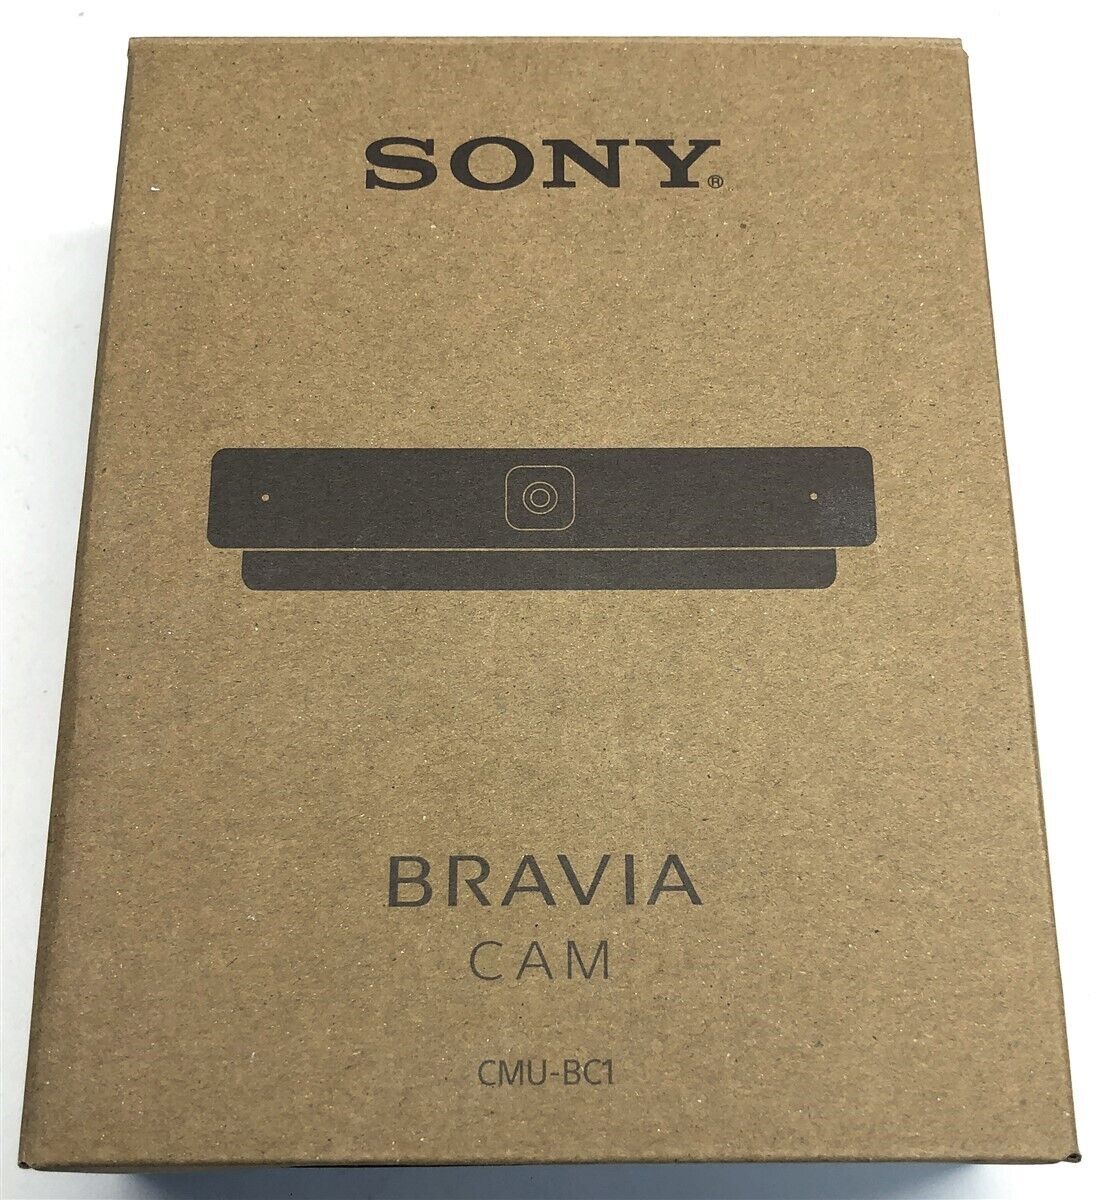 Sony BRAVIA CAM Webcam CMU-BC1 for X95K A90K A80K X90K X80K Sony Televisions